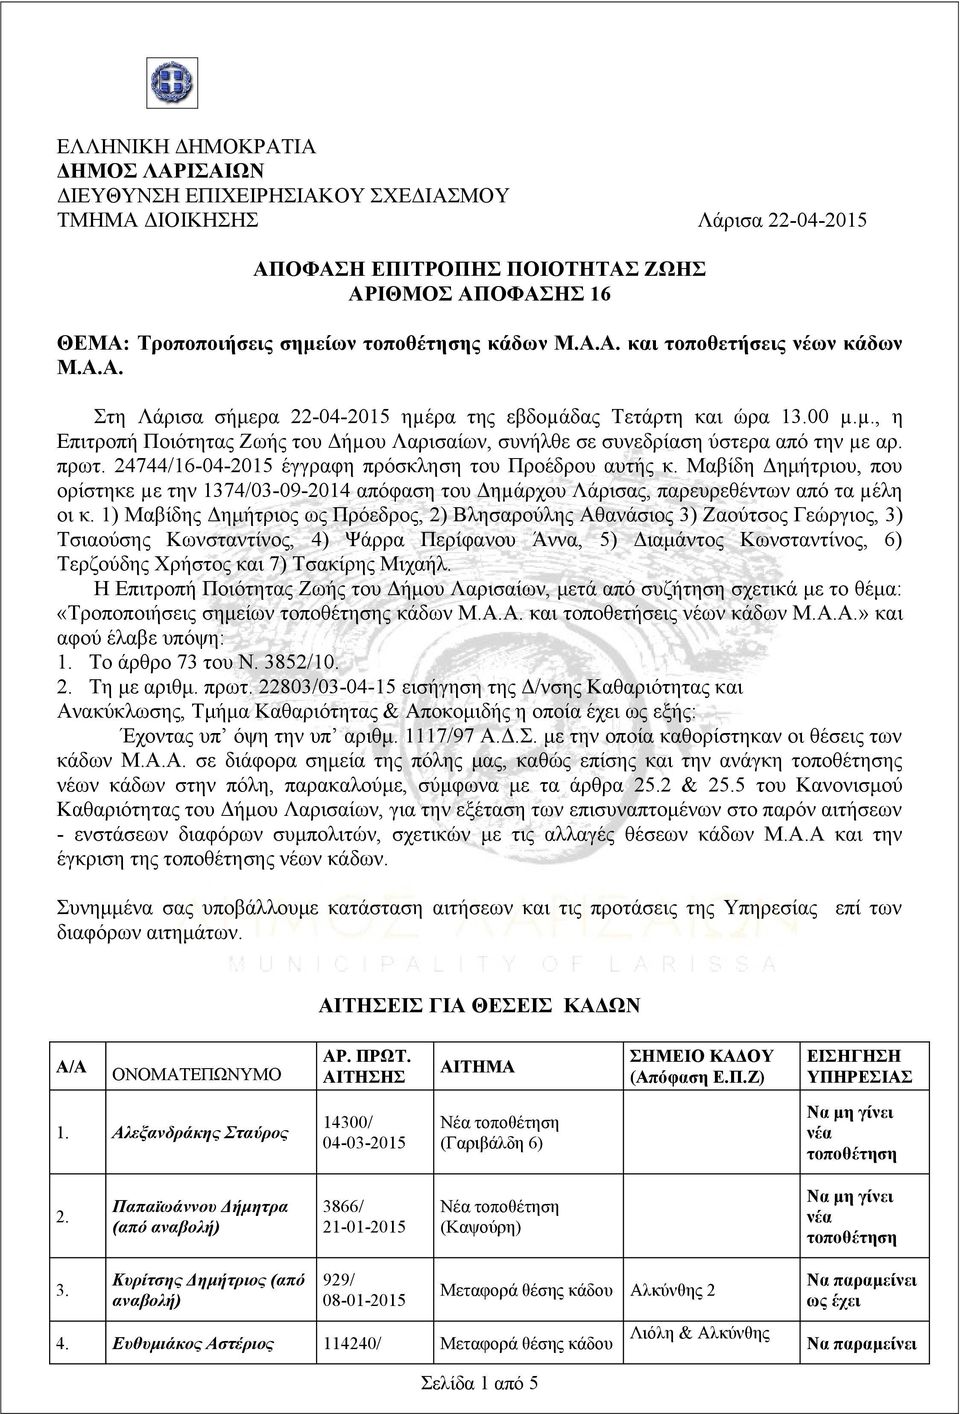 24744/16-04-2015 έγγραφη πρόσκληση του Προέδρου αυτής κ. Μαβίδη Δημήτριου, που ορίστηκε µε την 1374/03-09-2014 απόφαση του Δηµάρχου Λάρισας, παρευρεθέντων από τα µέλη οι κ.